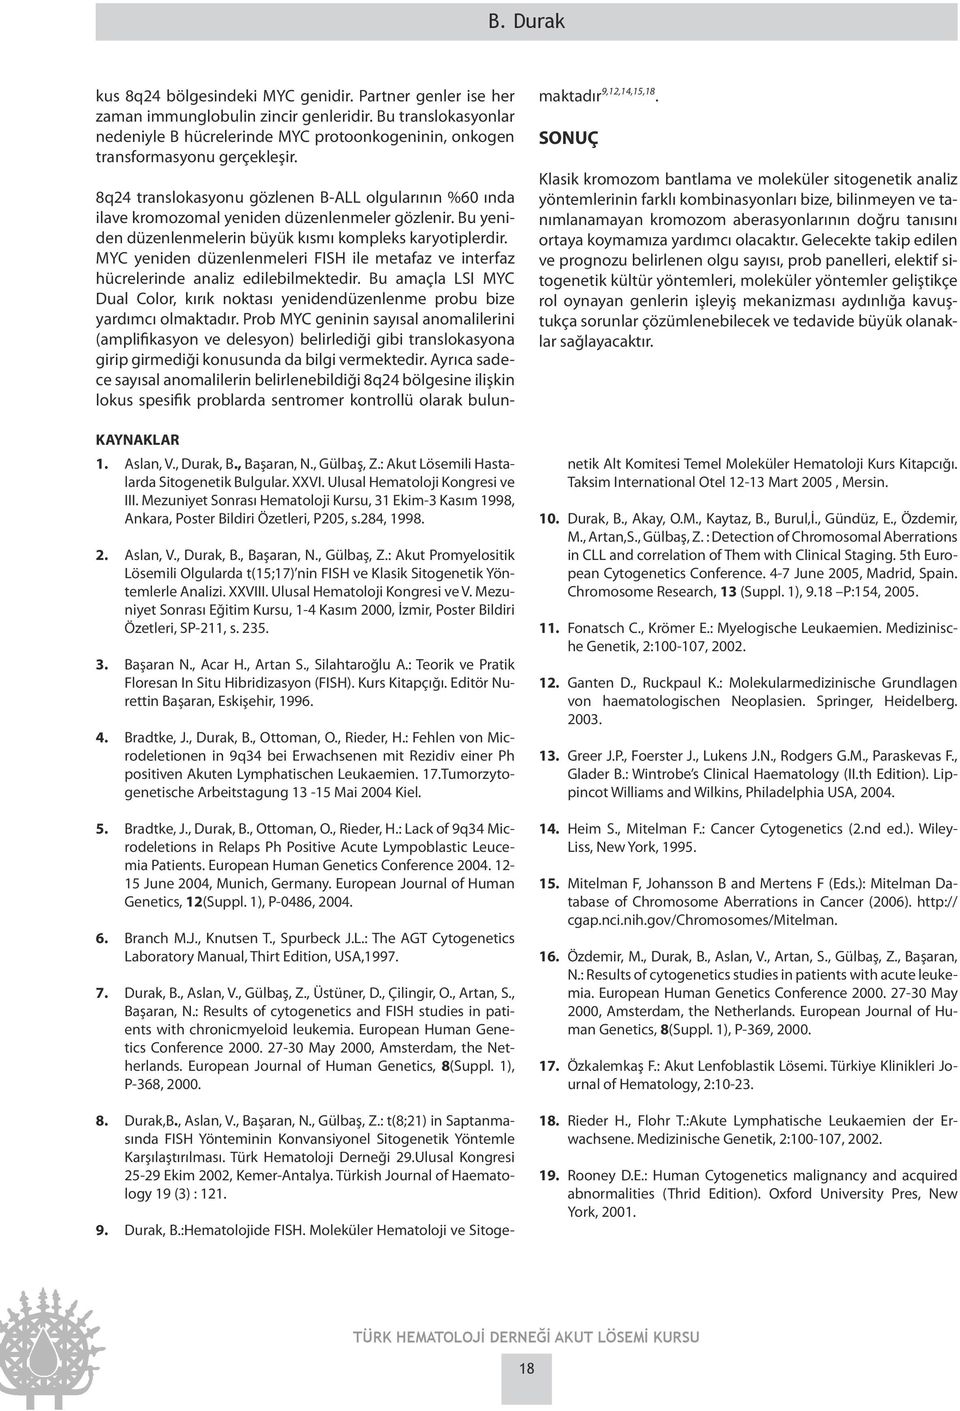 : Akut Lösemili Hastalarda Sitogenetik Bulgular. XXVI. Ulusal Hematoloji Kongresi ve III. Mezuniyet Sonrası Hematoloji Kursu, 31 Ekim-3 Kasım 1998, Ankara, Poster Bildiri Özetleri, P205, s.284, 1998.